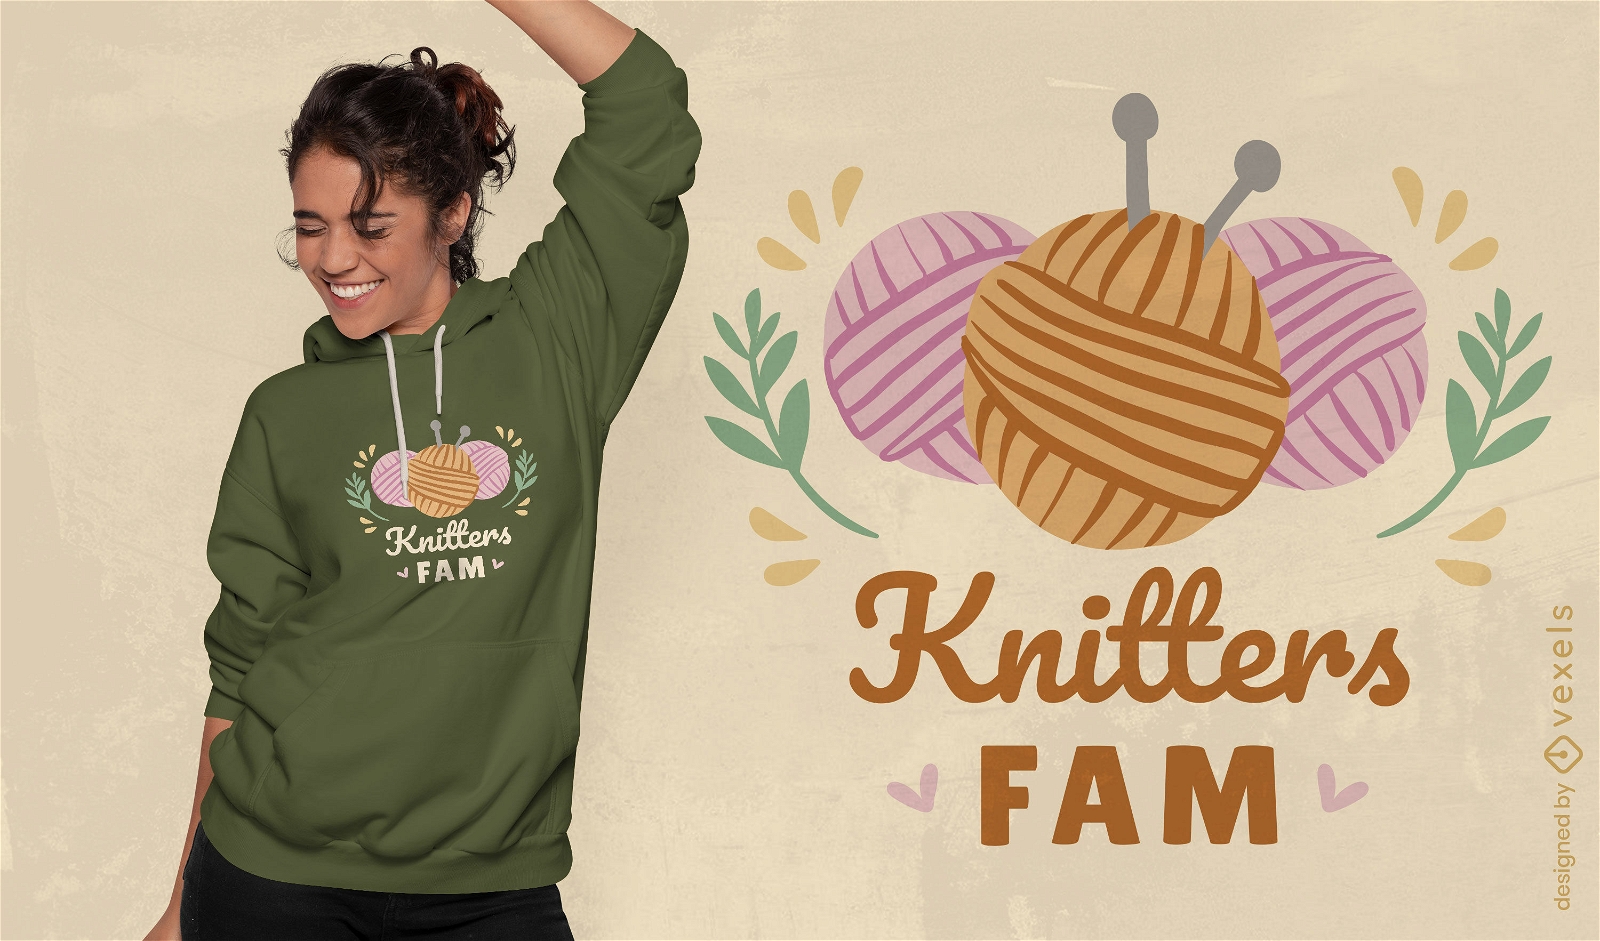 Knitters fam t-shirt design